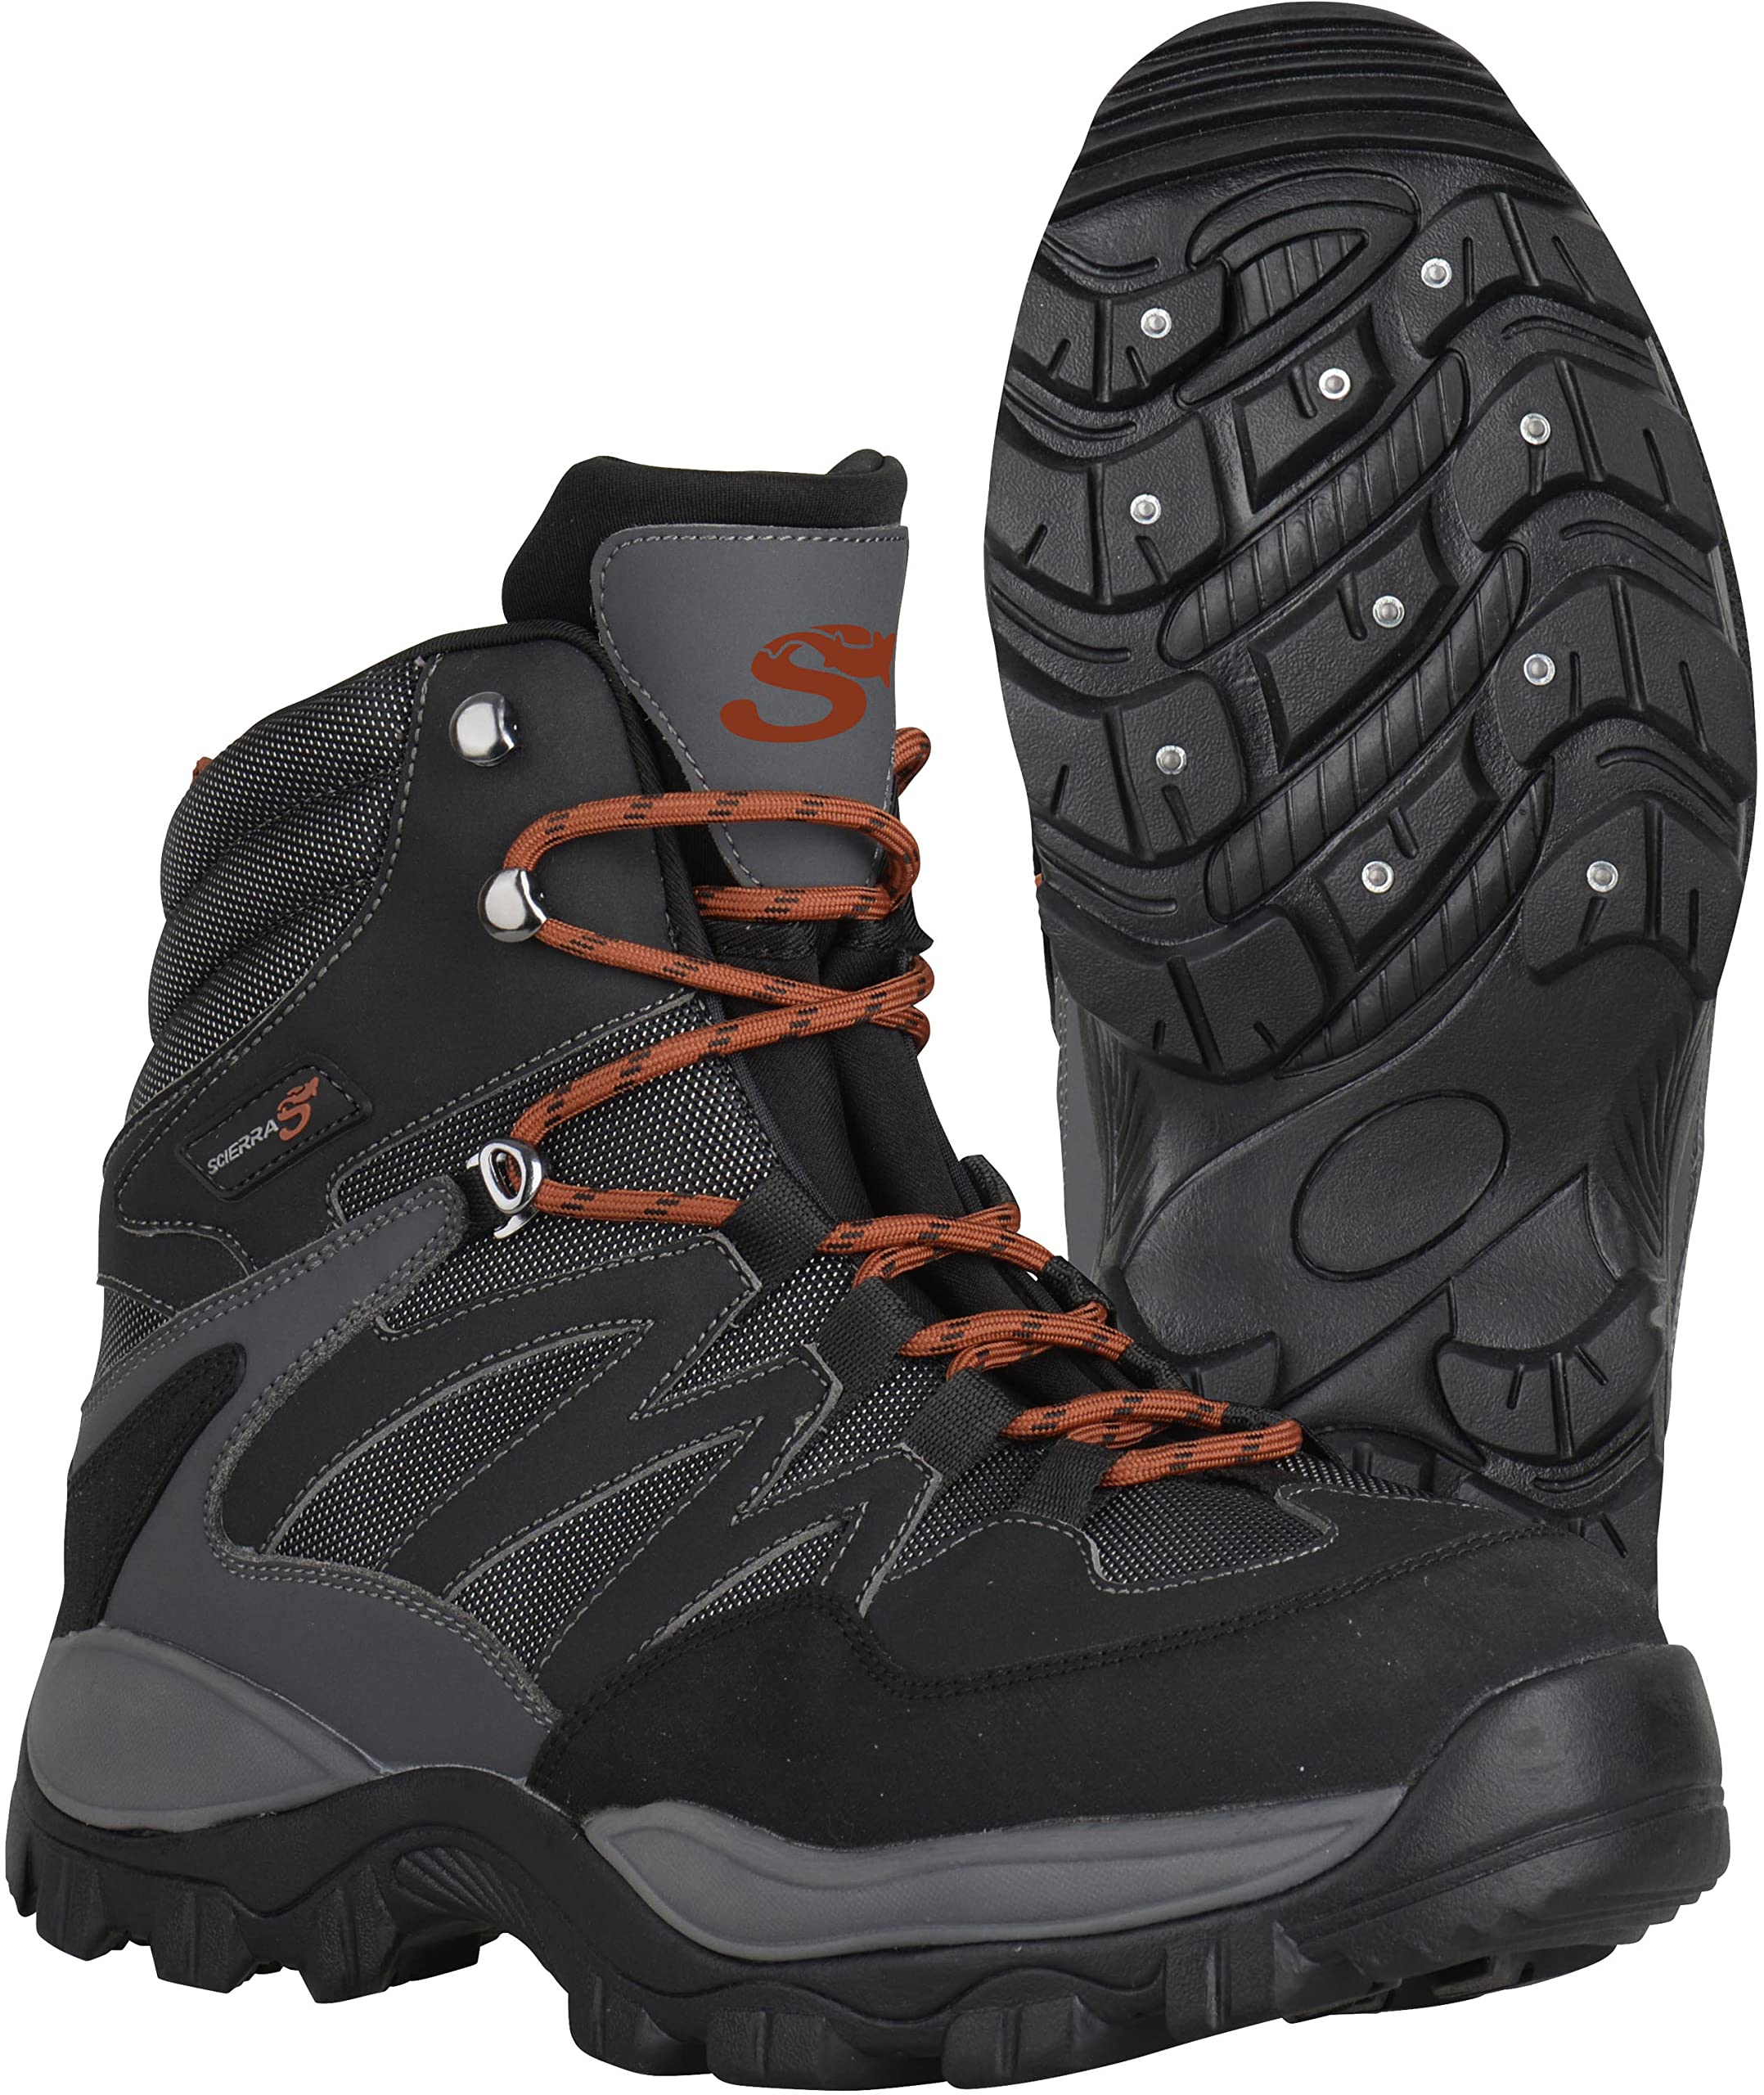 Scierra Schuhe X-Force Wading Shoe - Black, 45, Crantées/Cloutées